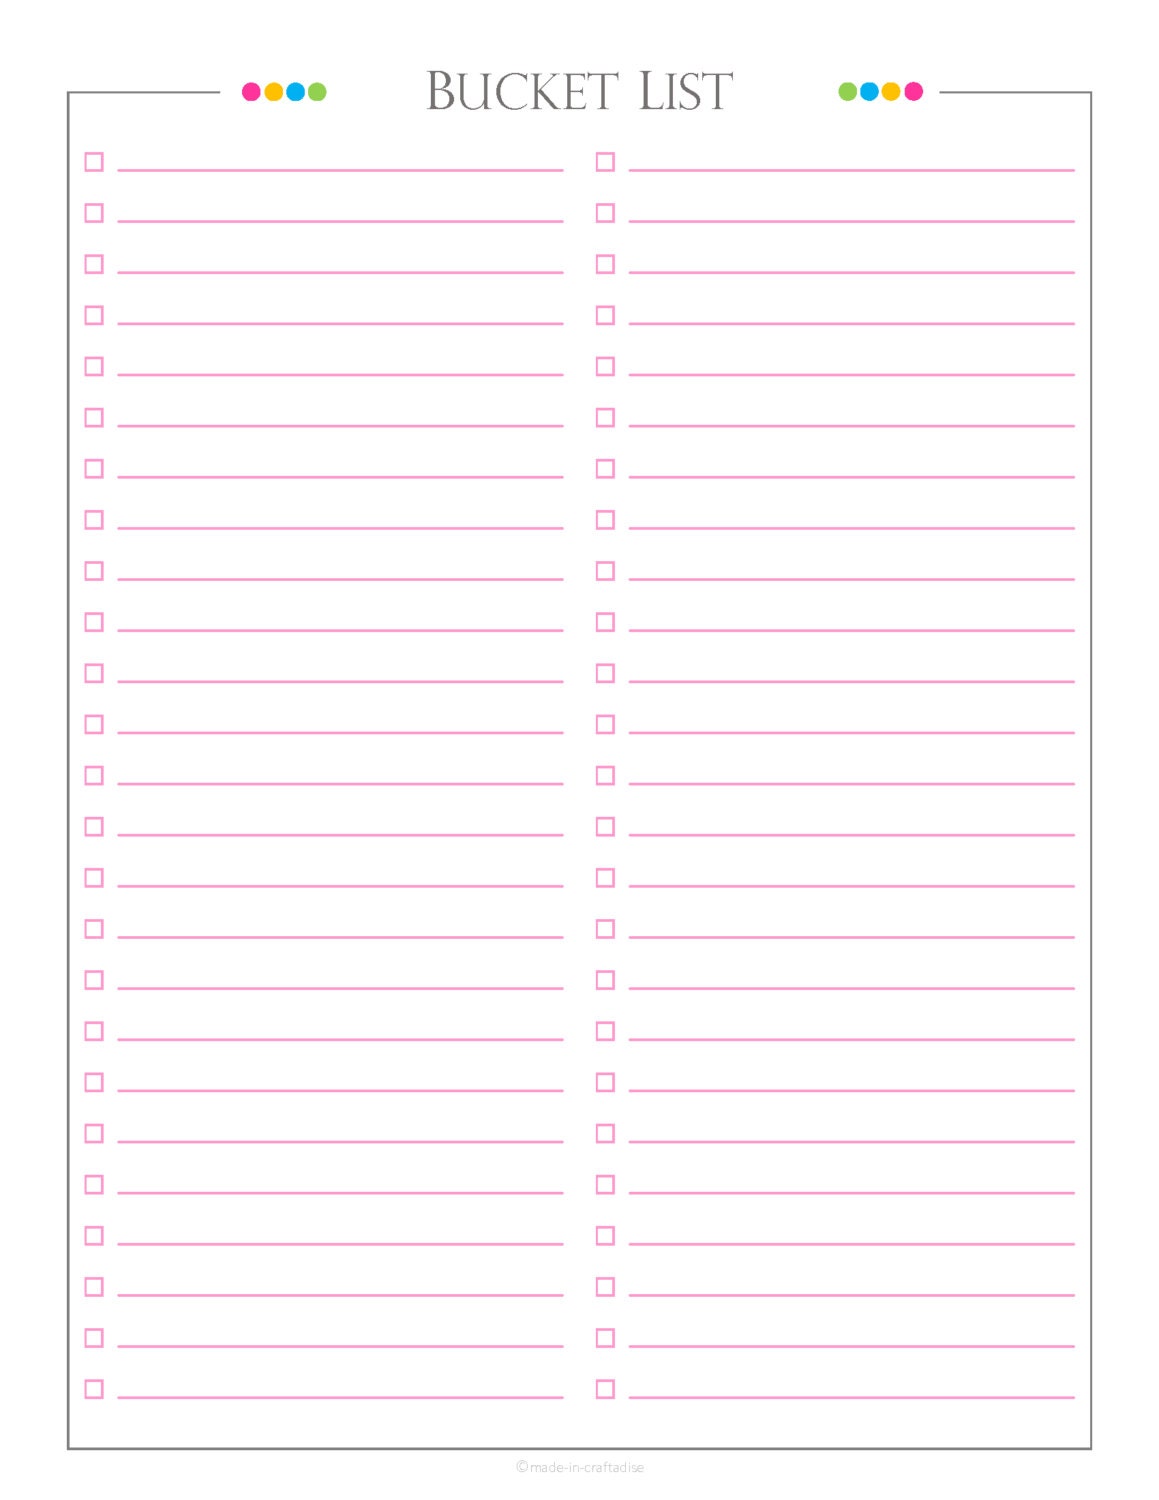 Bucket list PDF Planner bucket list checklist list to do